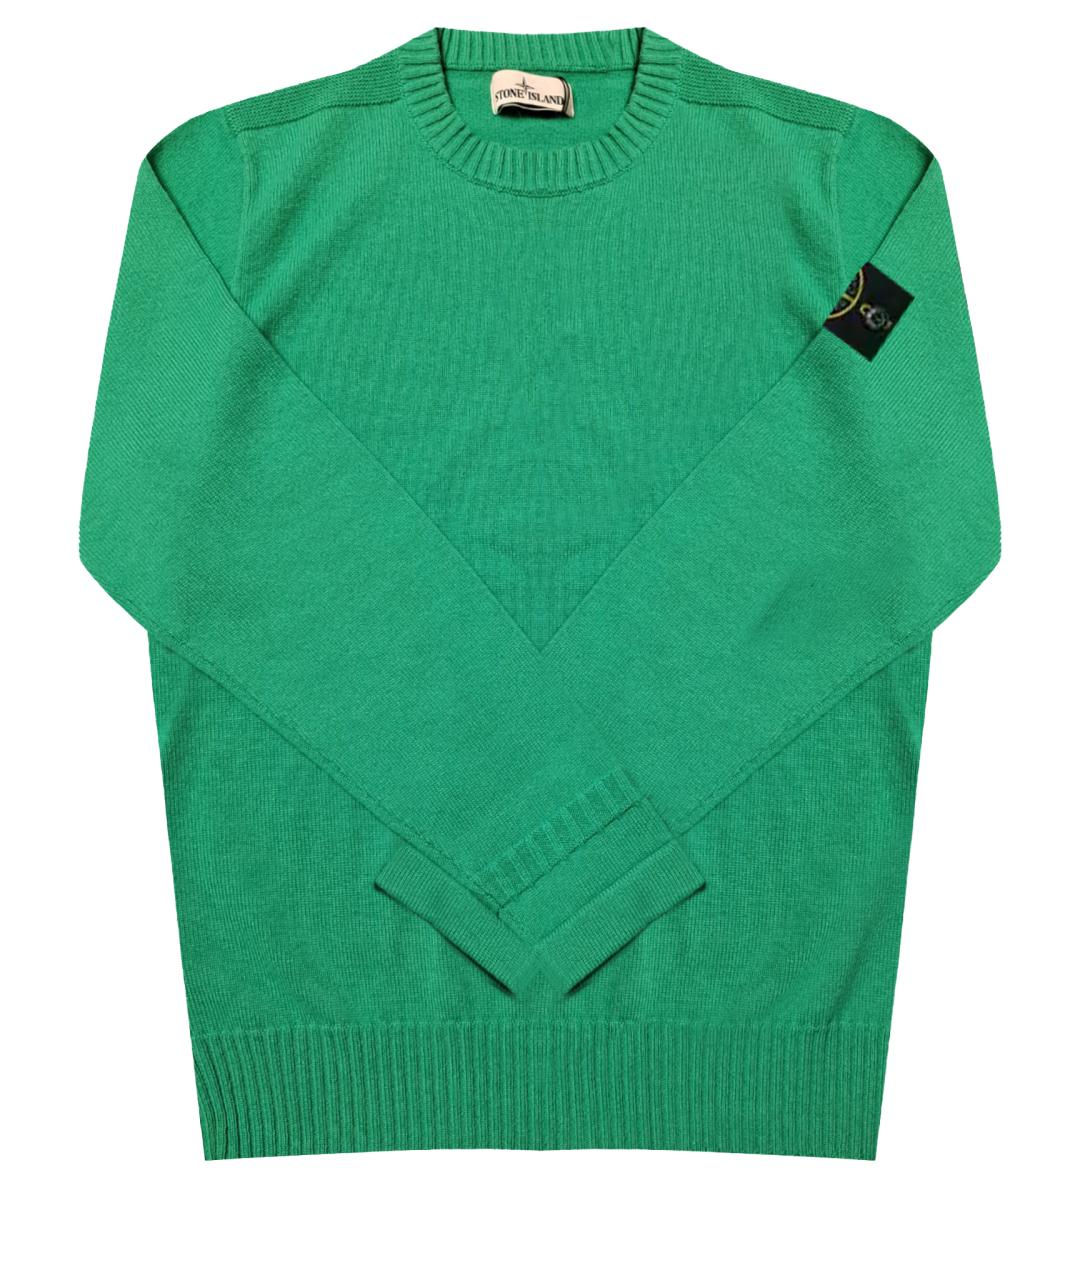 STONE ISLAND Зеленый кашемировый джемпер / свитер, фото 1